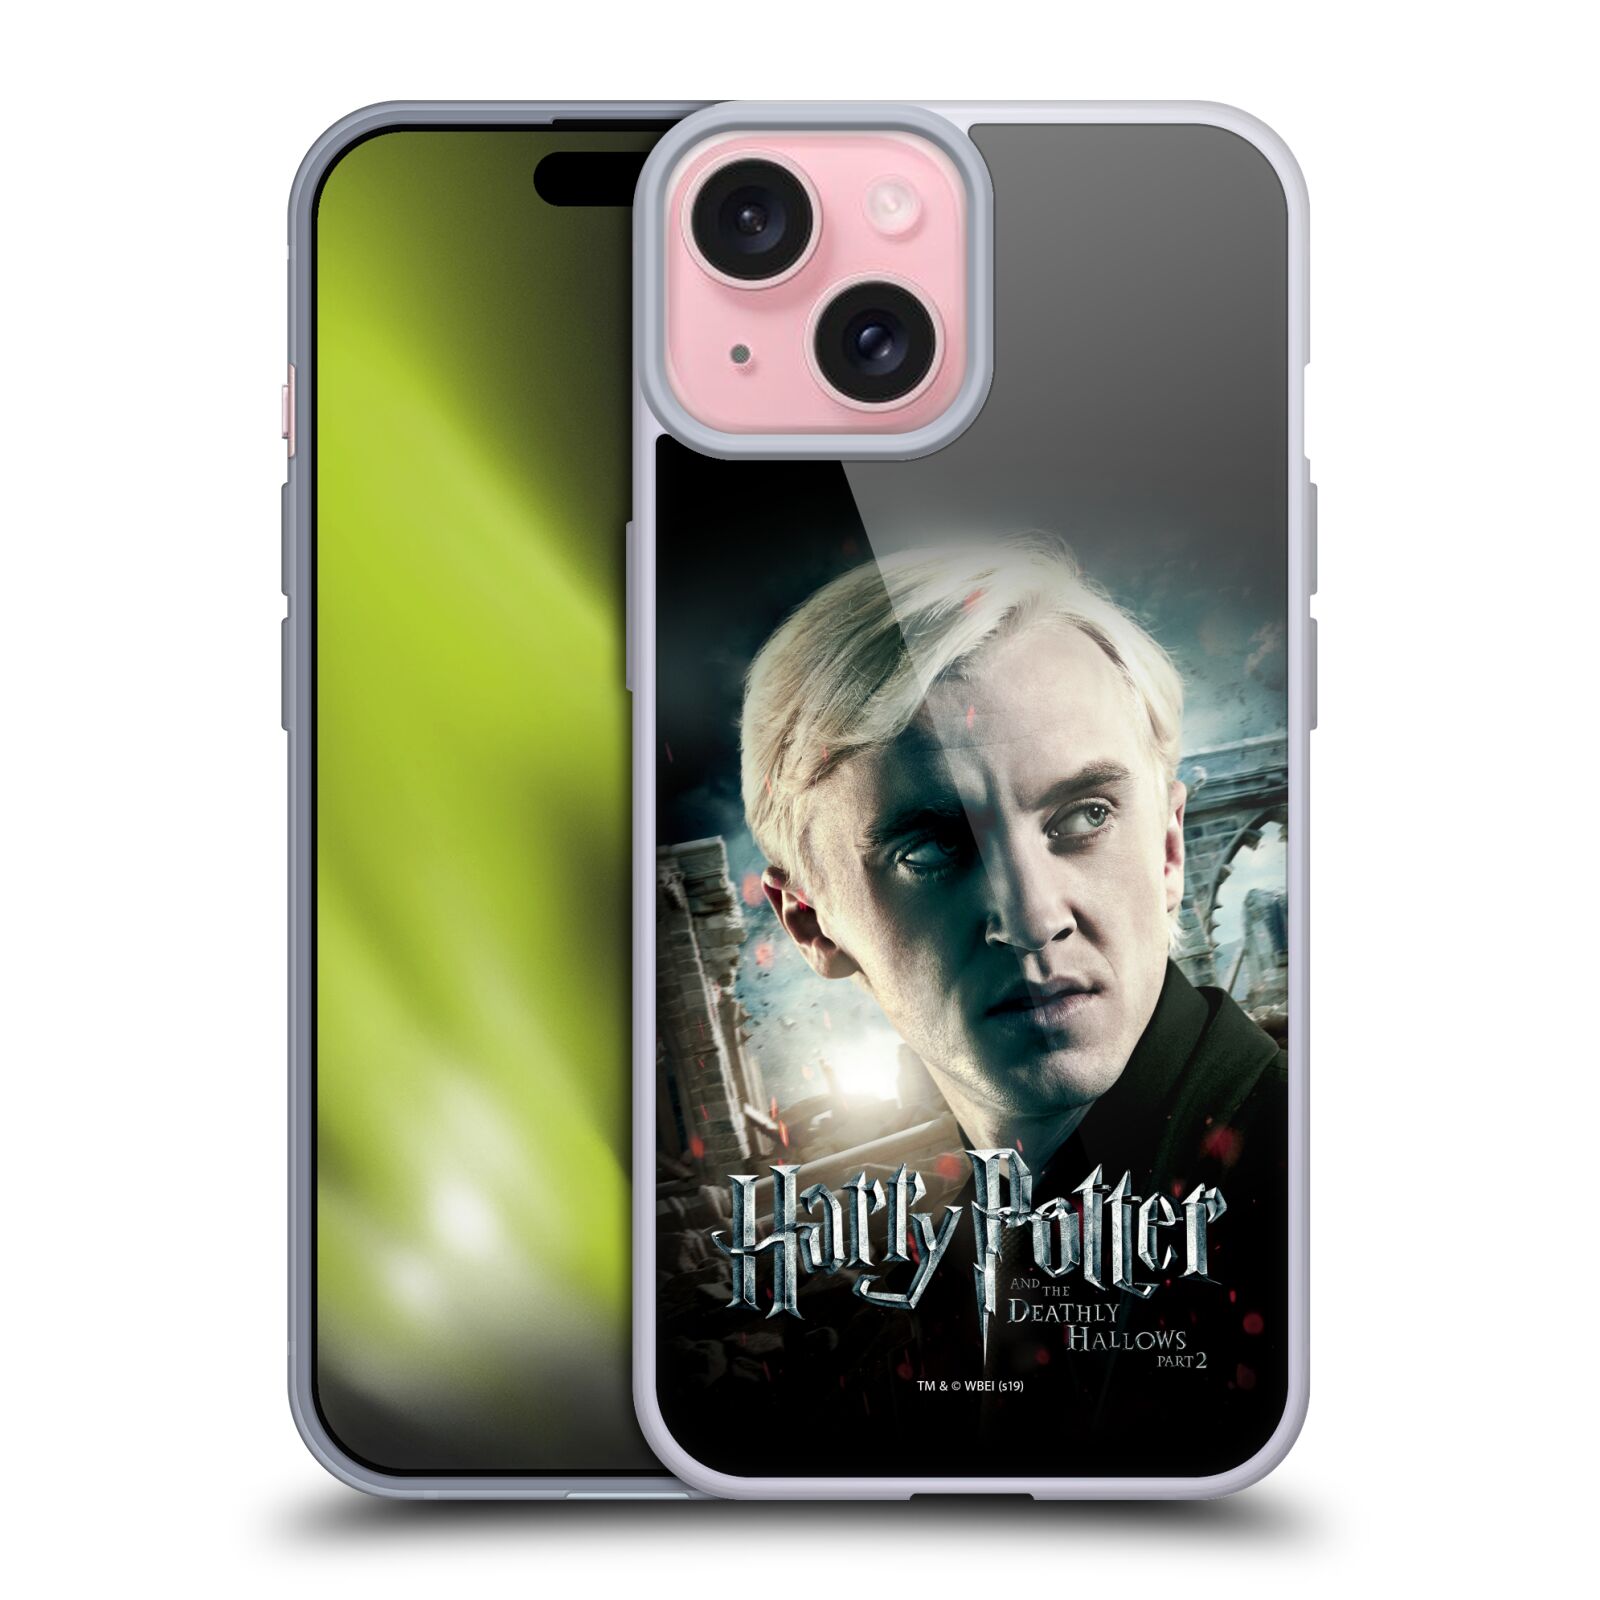 Silikonové lesklé pouzdro na mobil Apple iPhone 15 - Harry Potter a Relikvie smrti - Draco Malfoy (Silikonový lesklý kryt, obal, pouzdro na mobilní telefon Apple iPhone 15 s licencovaným motivem Harry Potter a Relikvie smrti - Draco Malfoy)